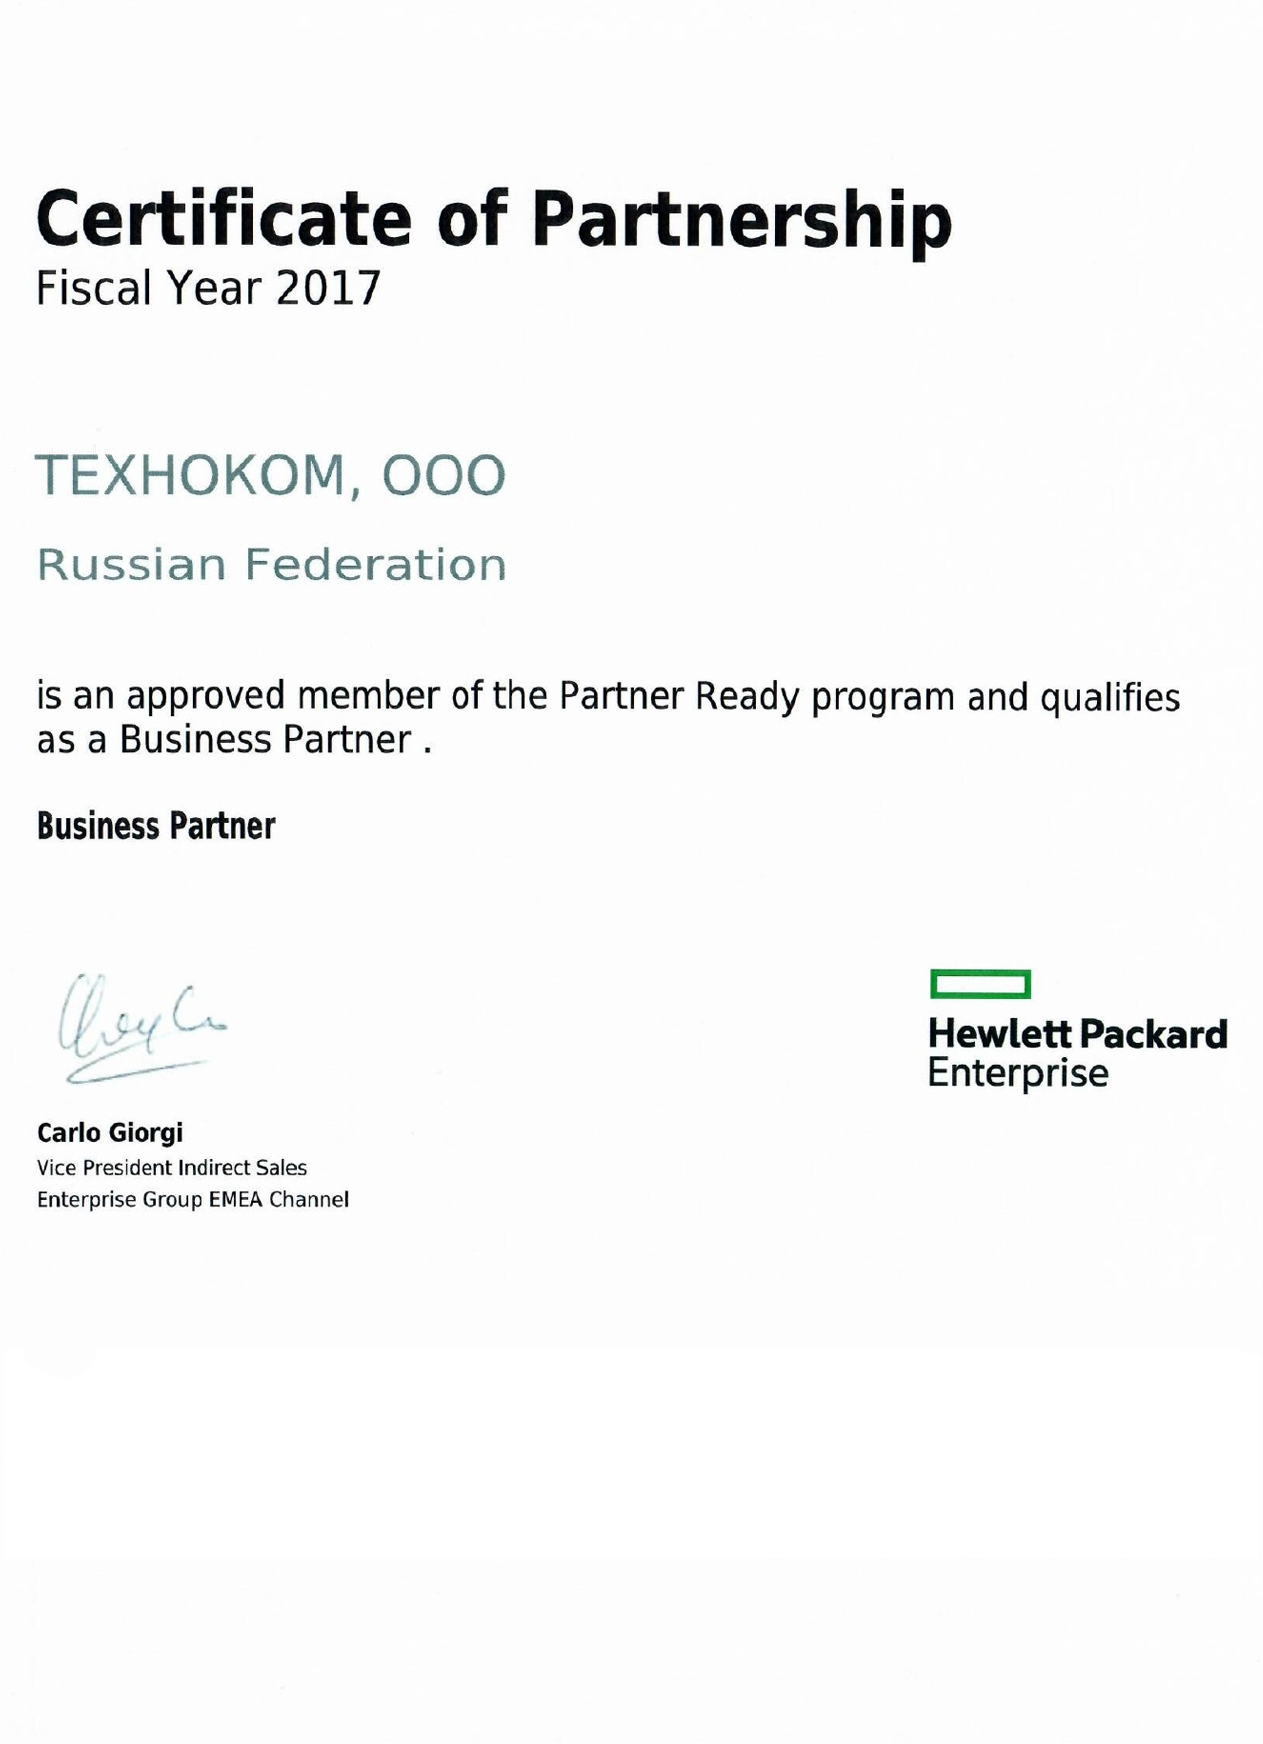 Сертификат авторизованного партнёра Hewlett Packard Enterprise